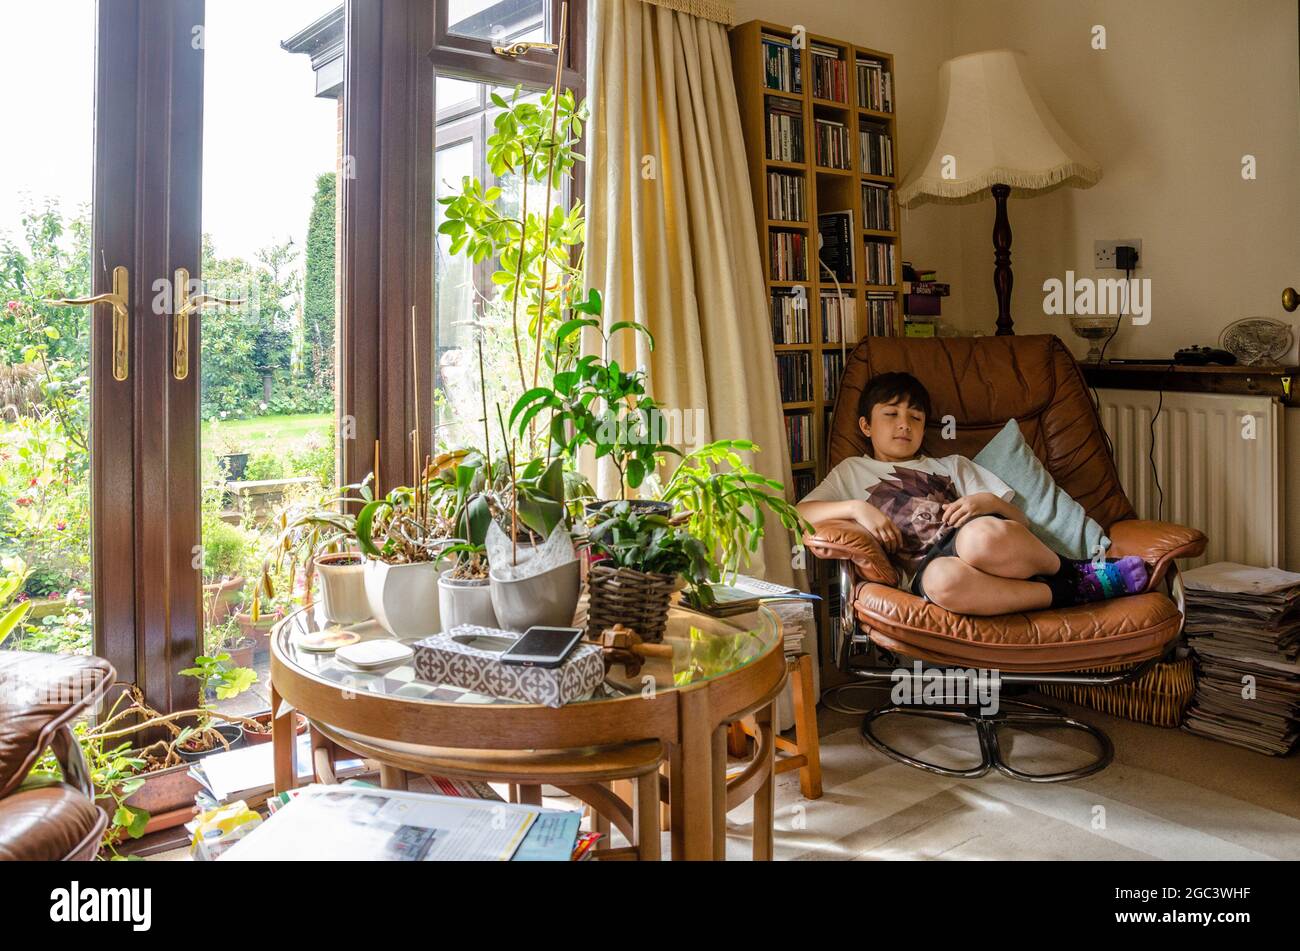 Un garçon se détend dans une chaise confortable avec une table en verre couverte de plantes à l'avant. Une ambiance familiale. Banque D'Images